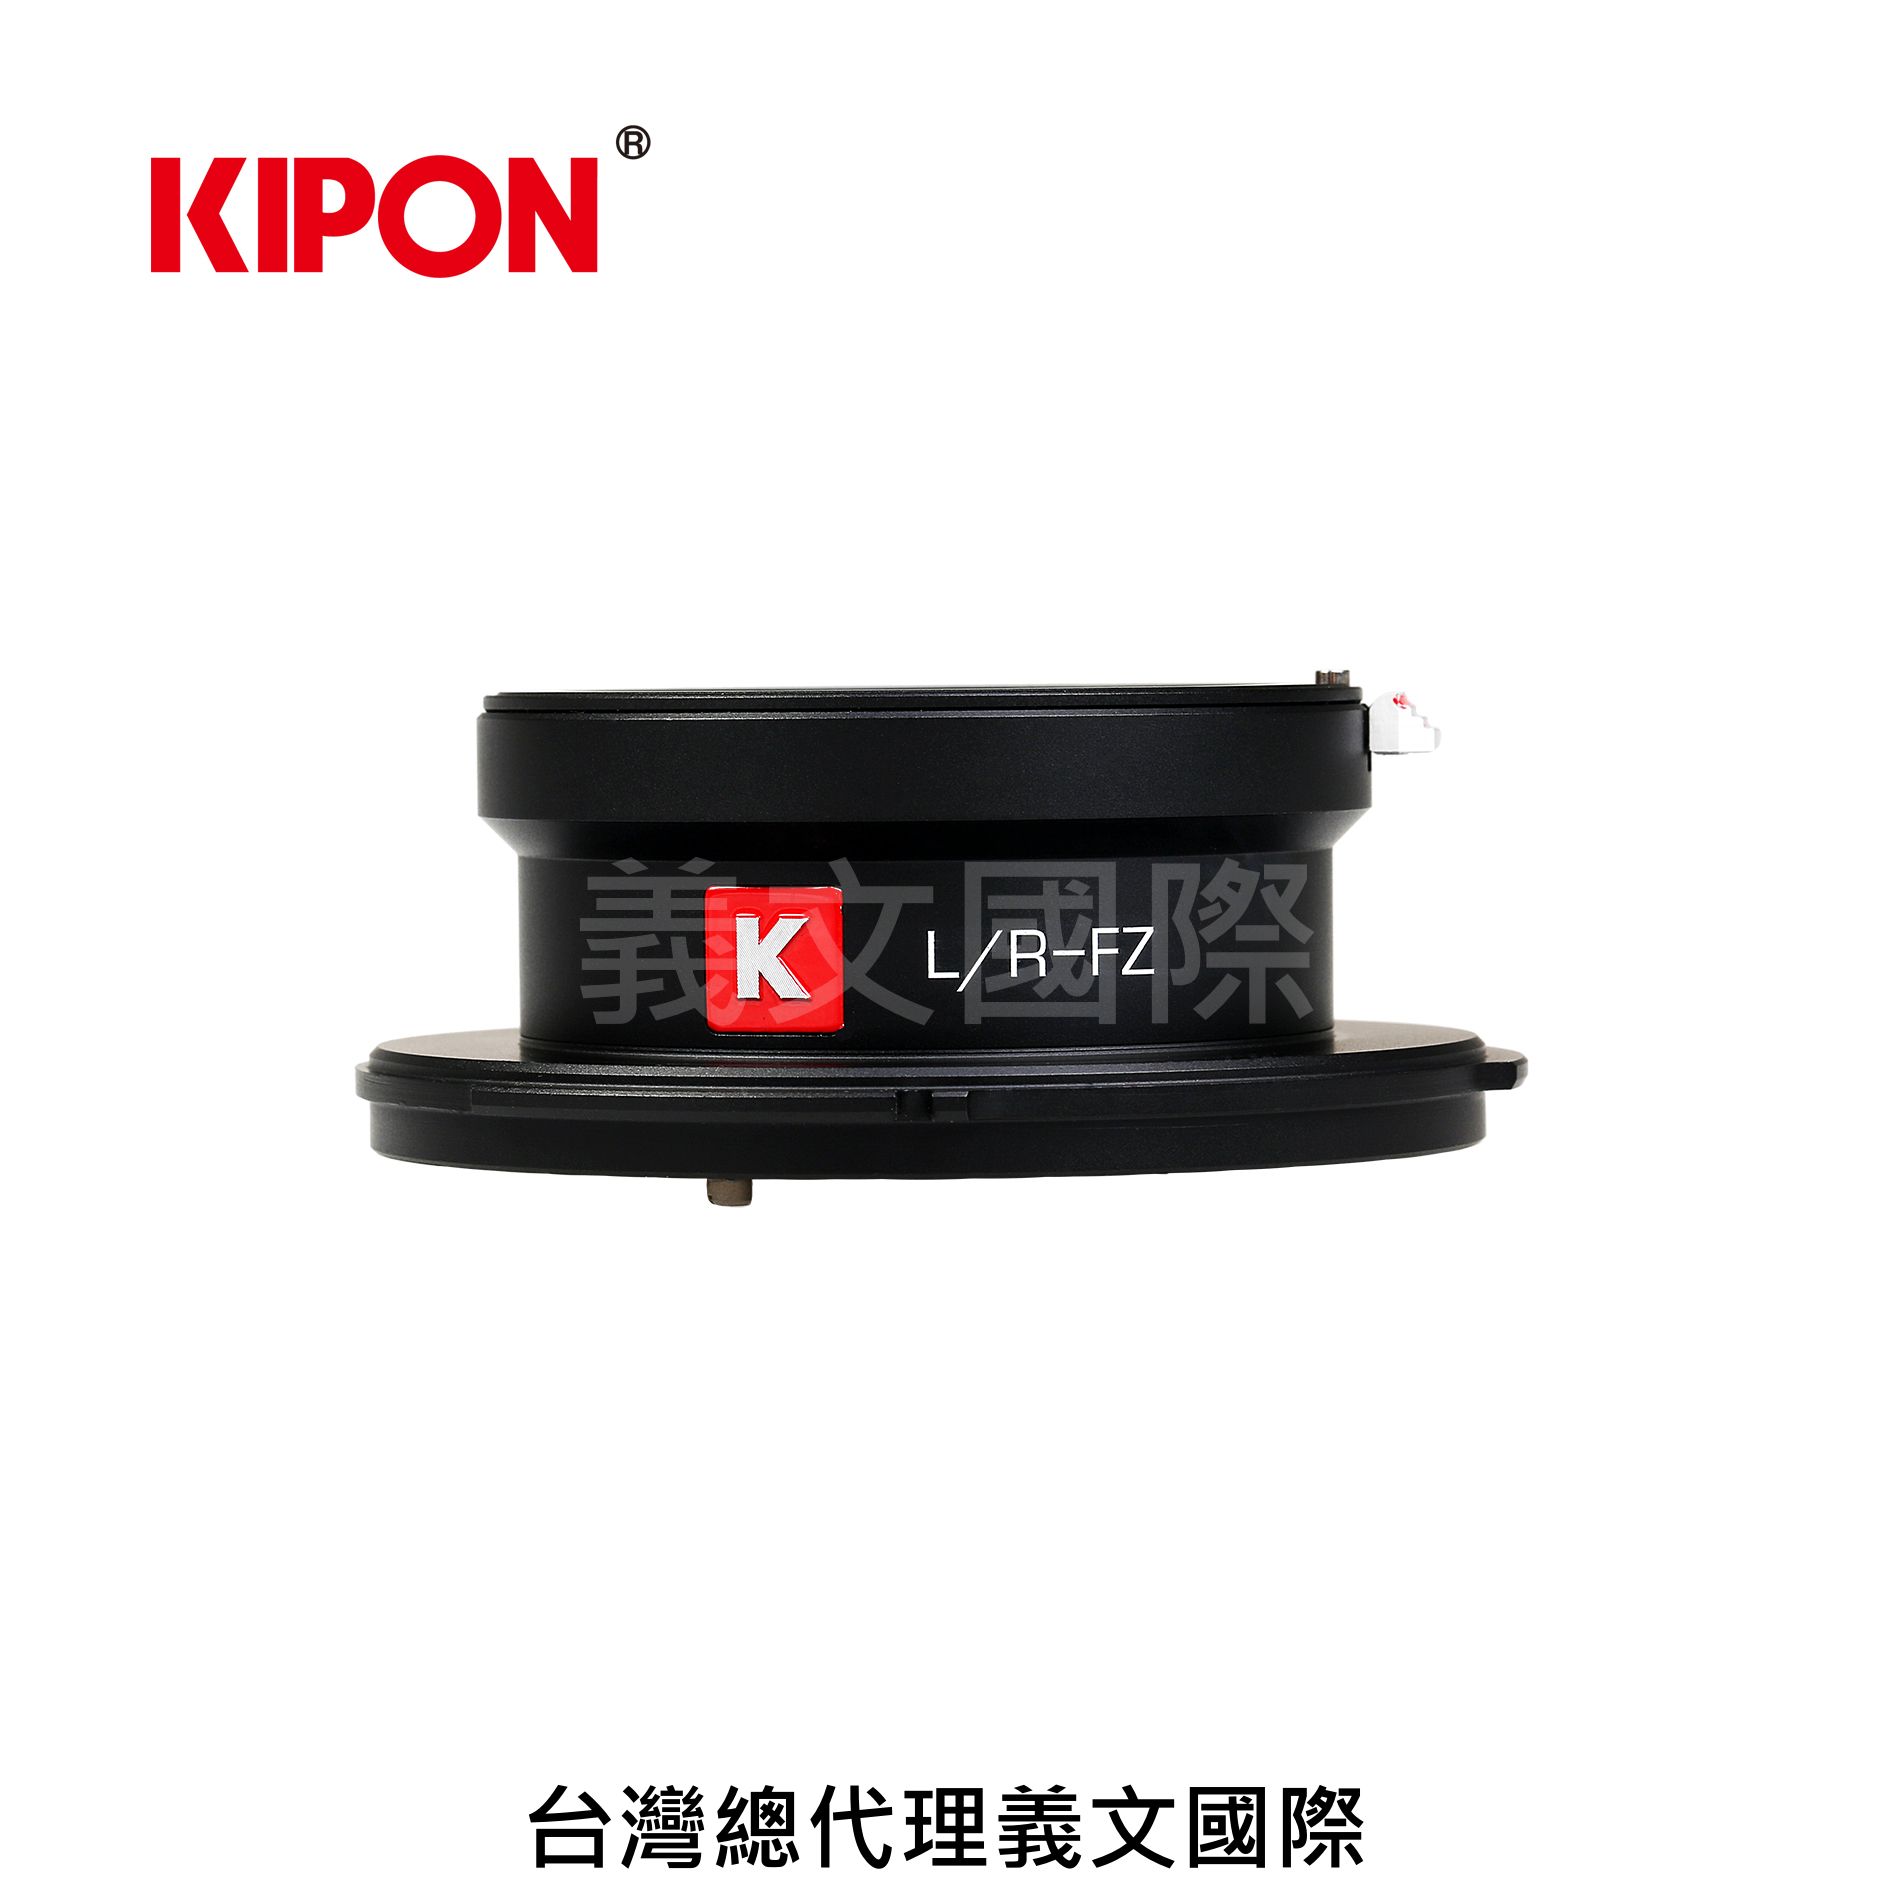 Kipon轉接環專賣店:L/R-FZ(Sony CineAlta,Leica R,PMW,F3,F5,F55)